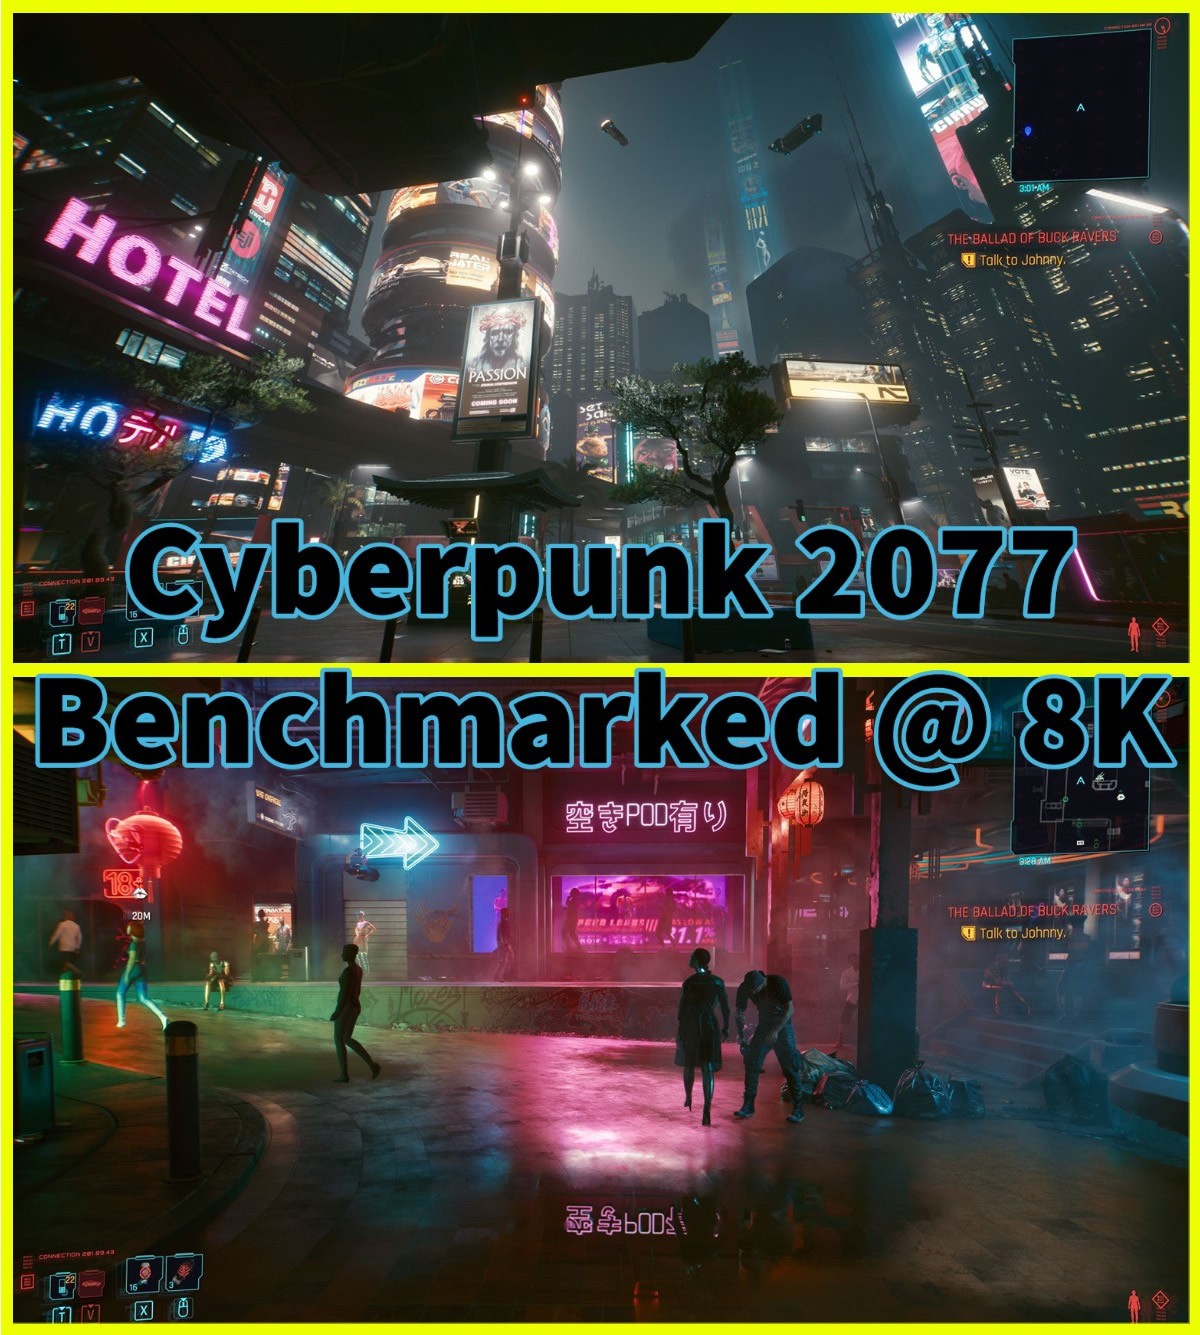 Quelle carte graphique pour pouvoir espérer jouer à Cyberpunk 2077 en 8K ???